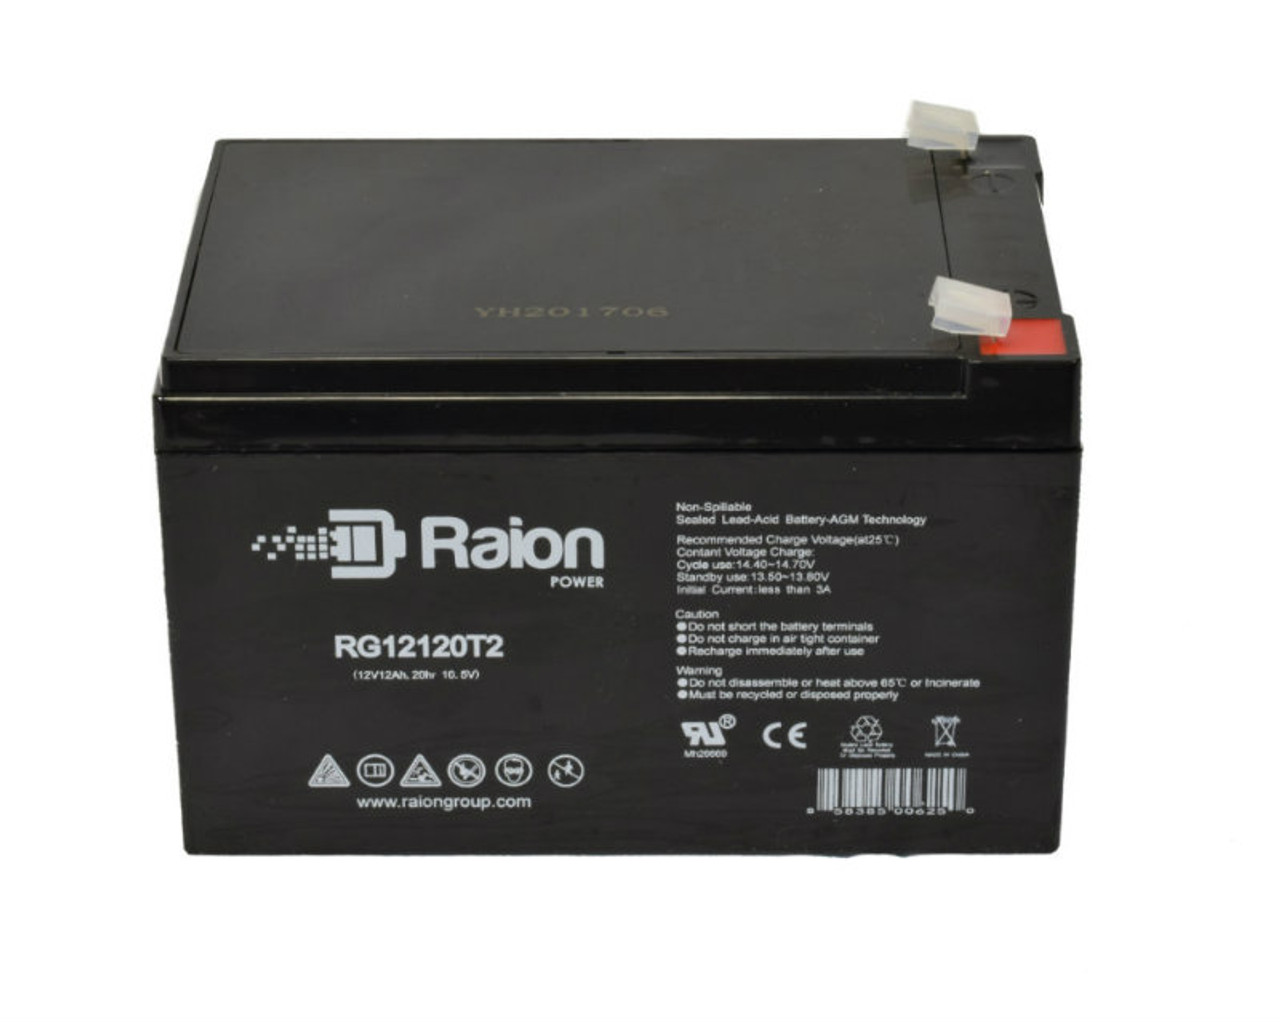 Raion Power RG12120T2 SLA Battery for SigmasTek SP12-12